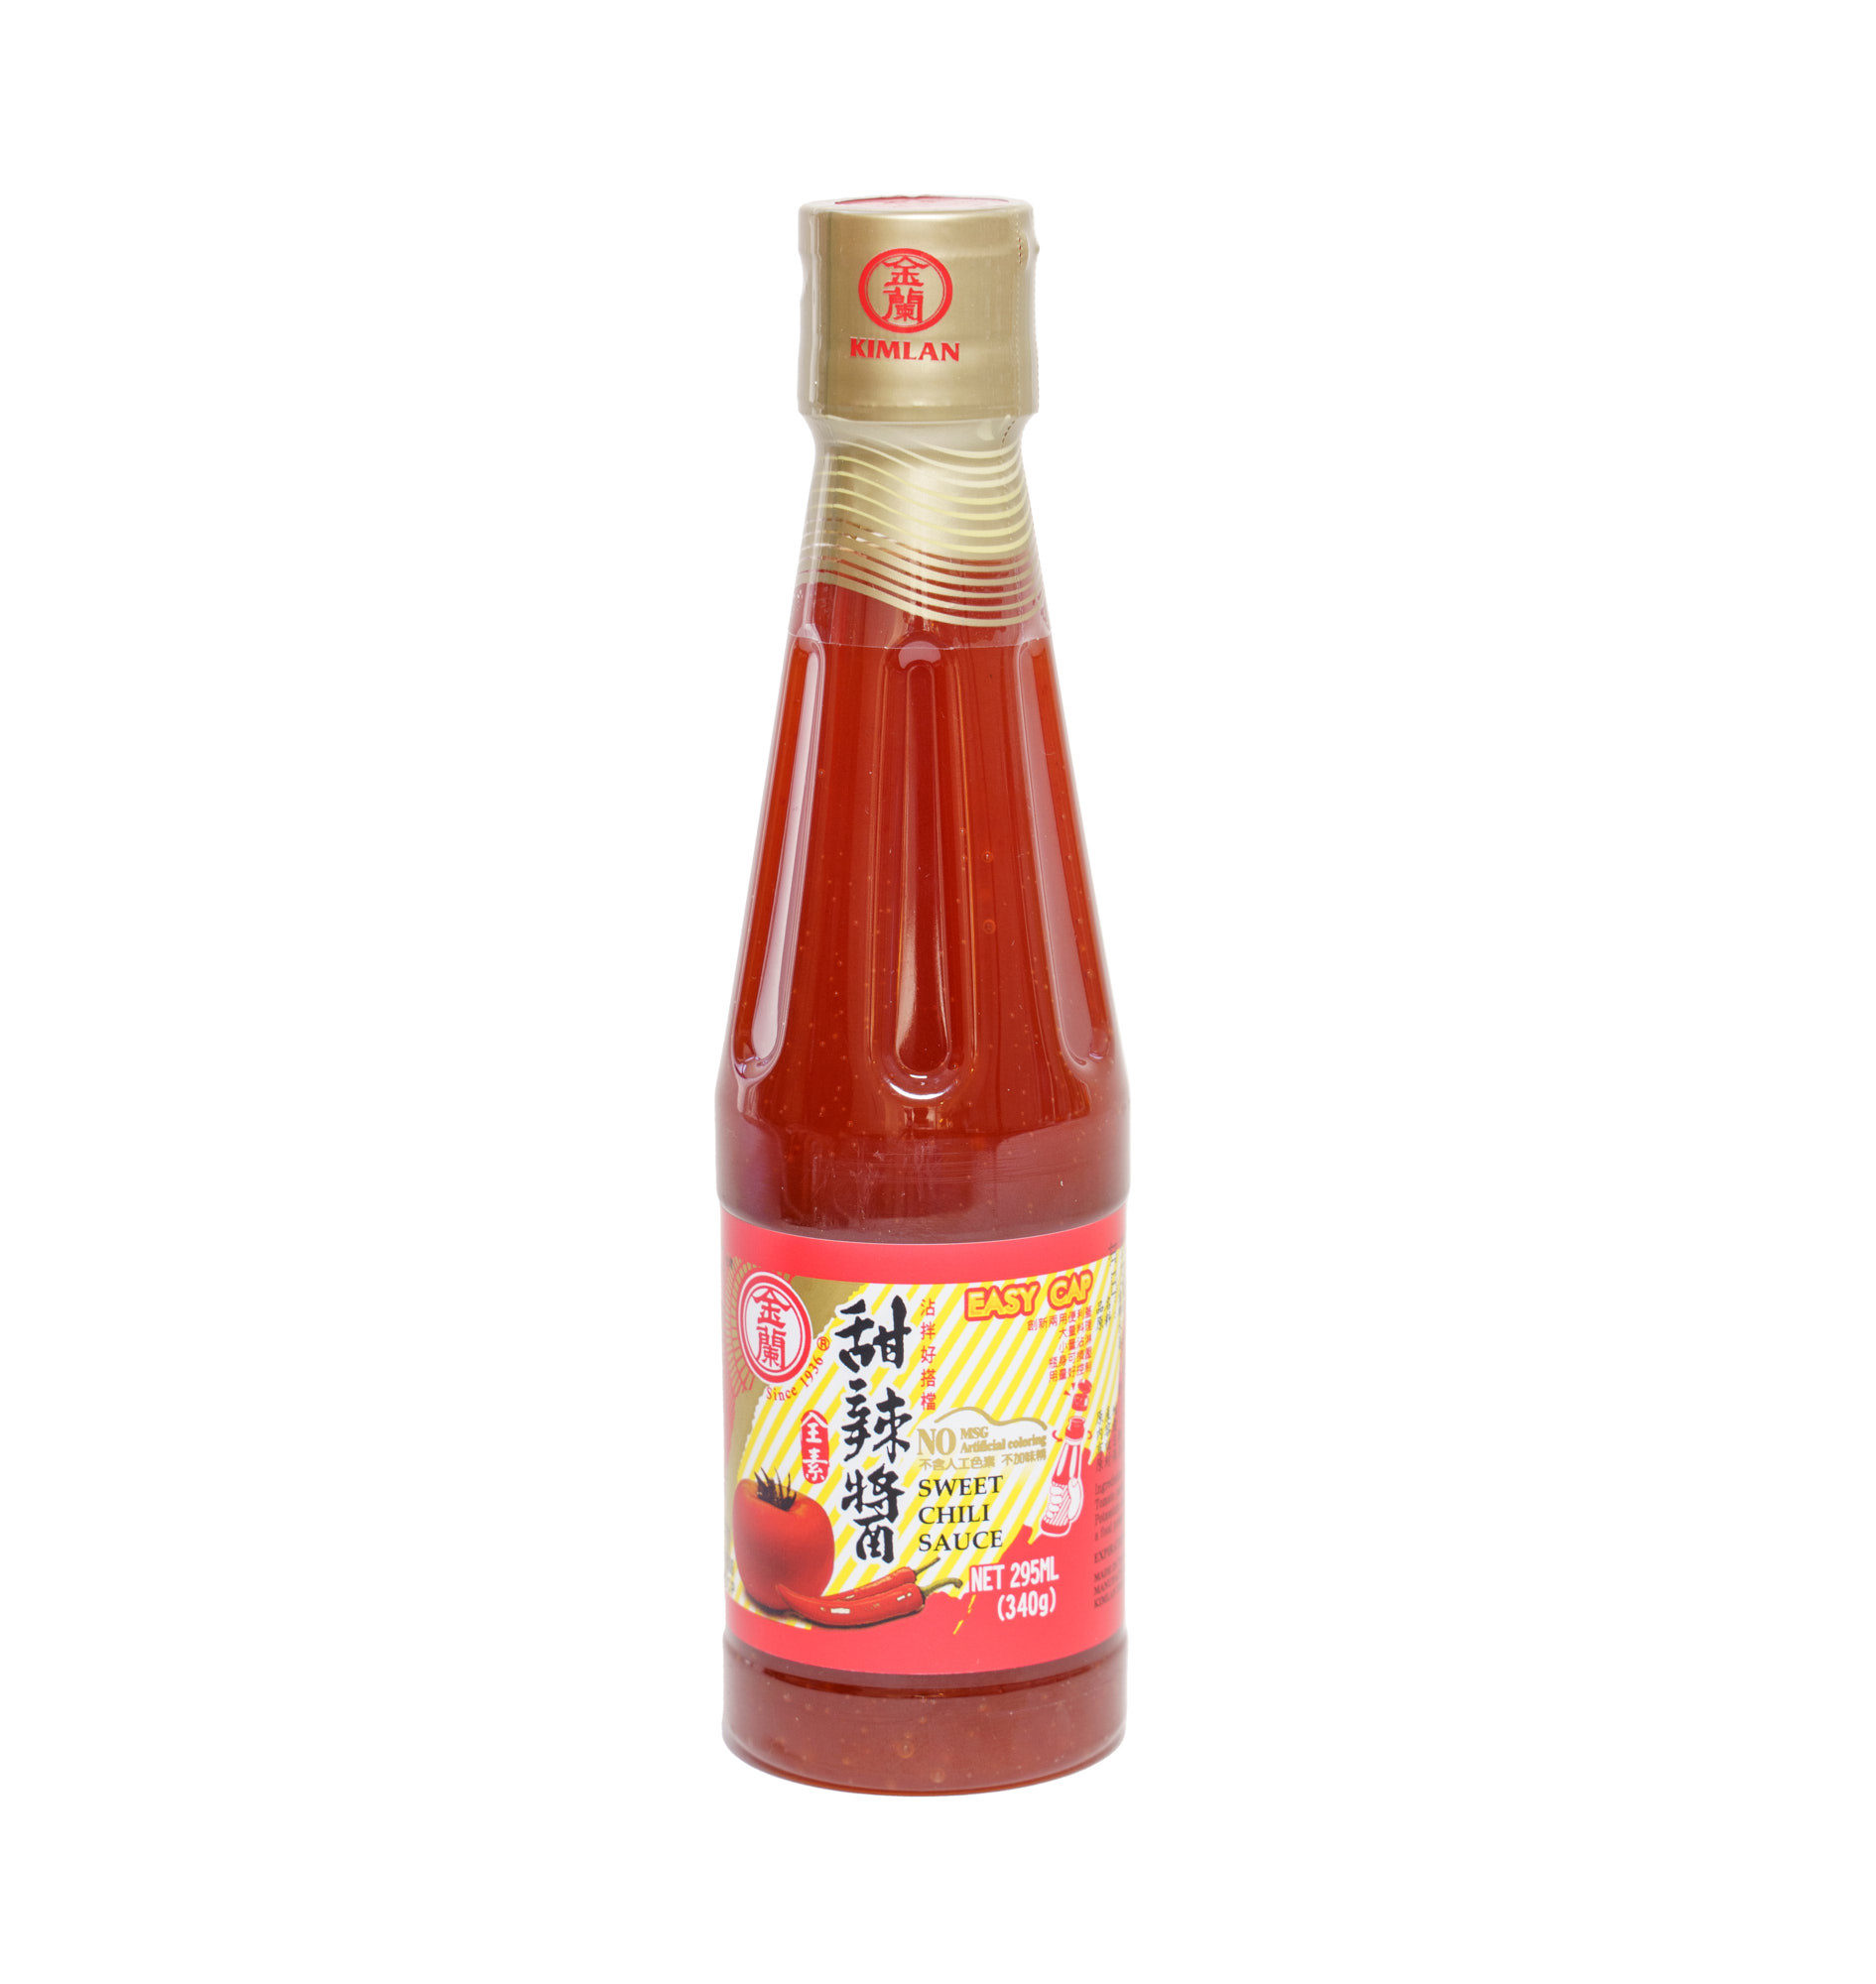 KIM LAN [V] Sweet Chili Sauce